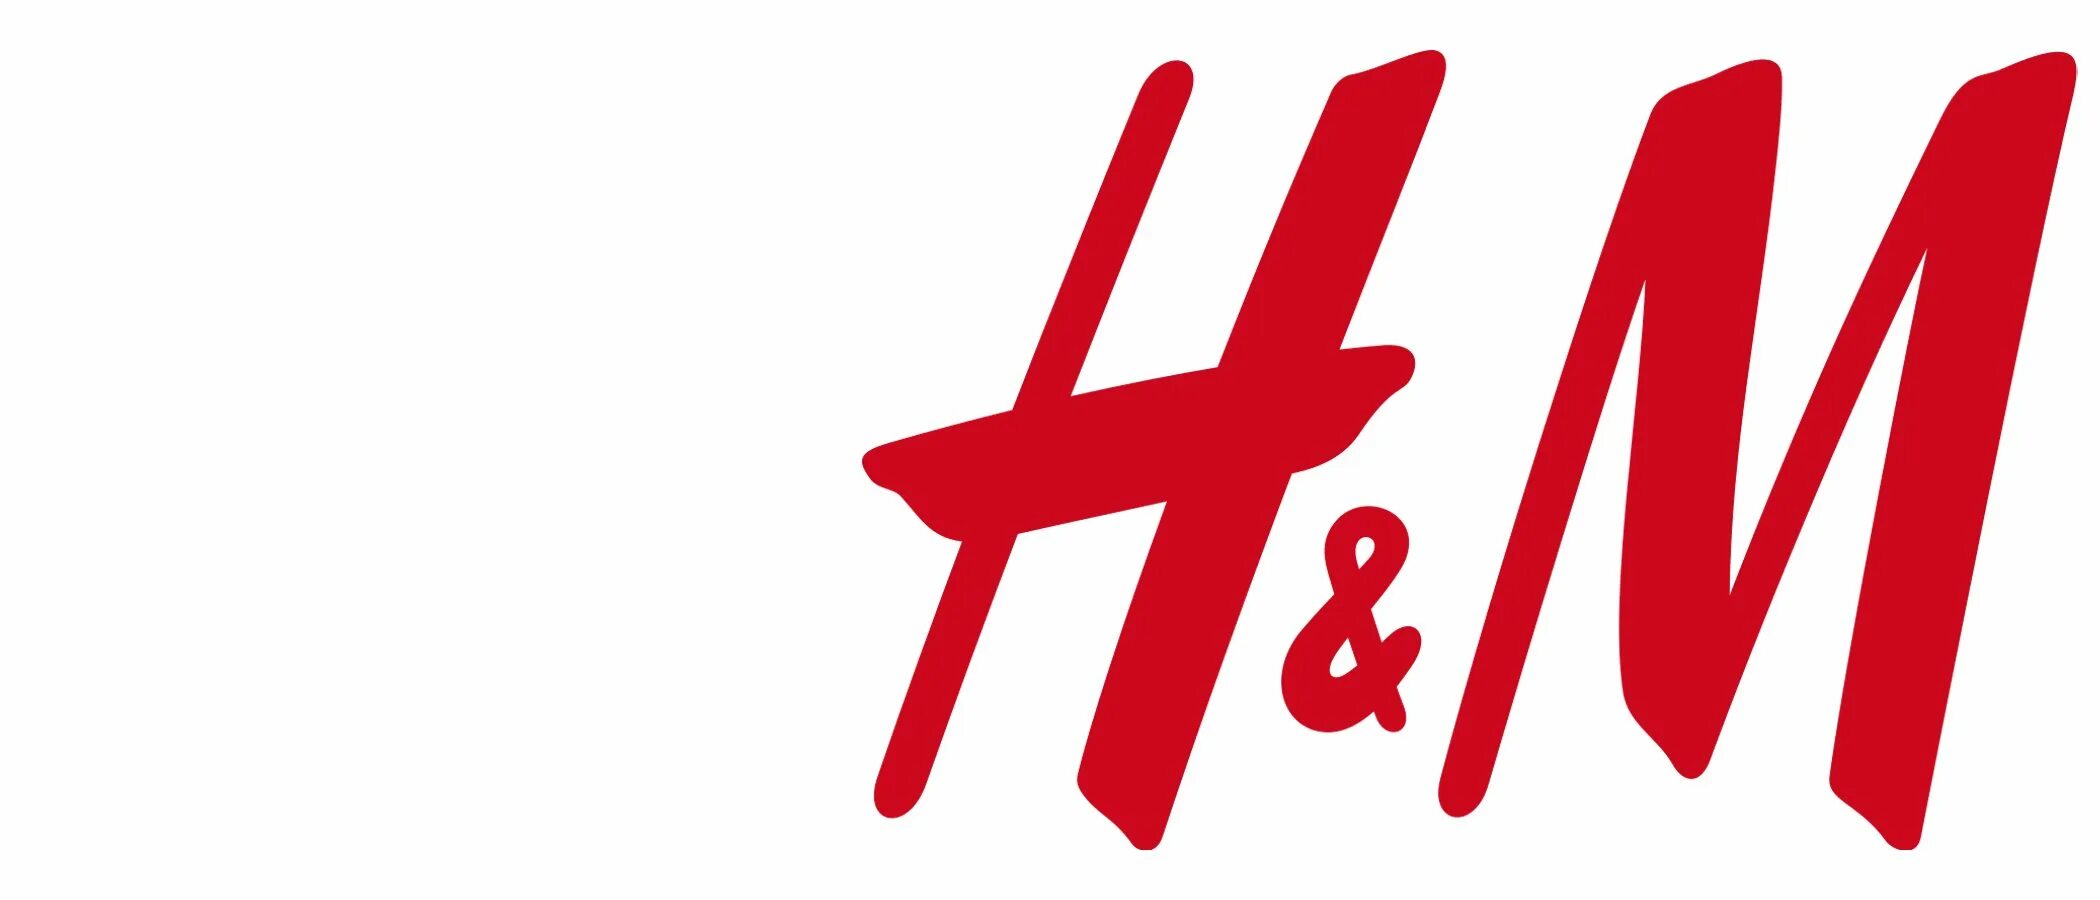 H turkey. HM логотип. Бренд h m. H&M картинки. Логотип HM прозрачный.